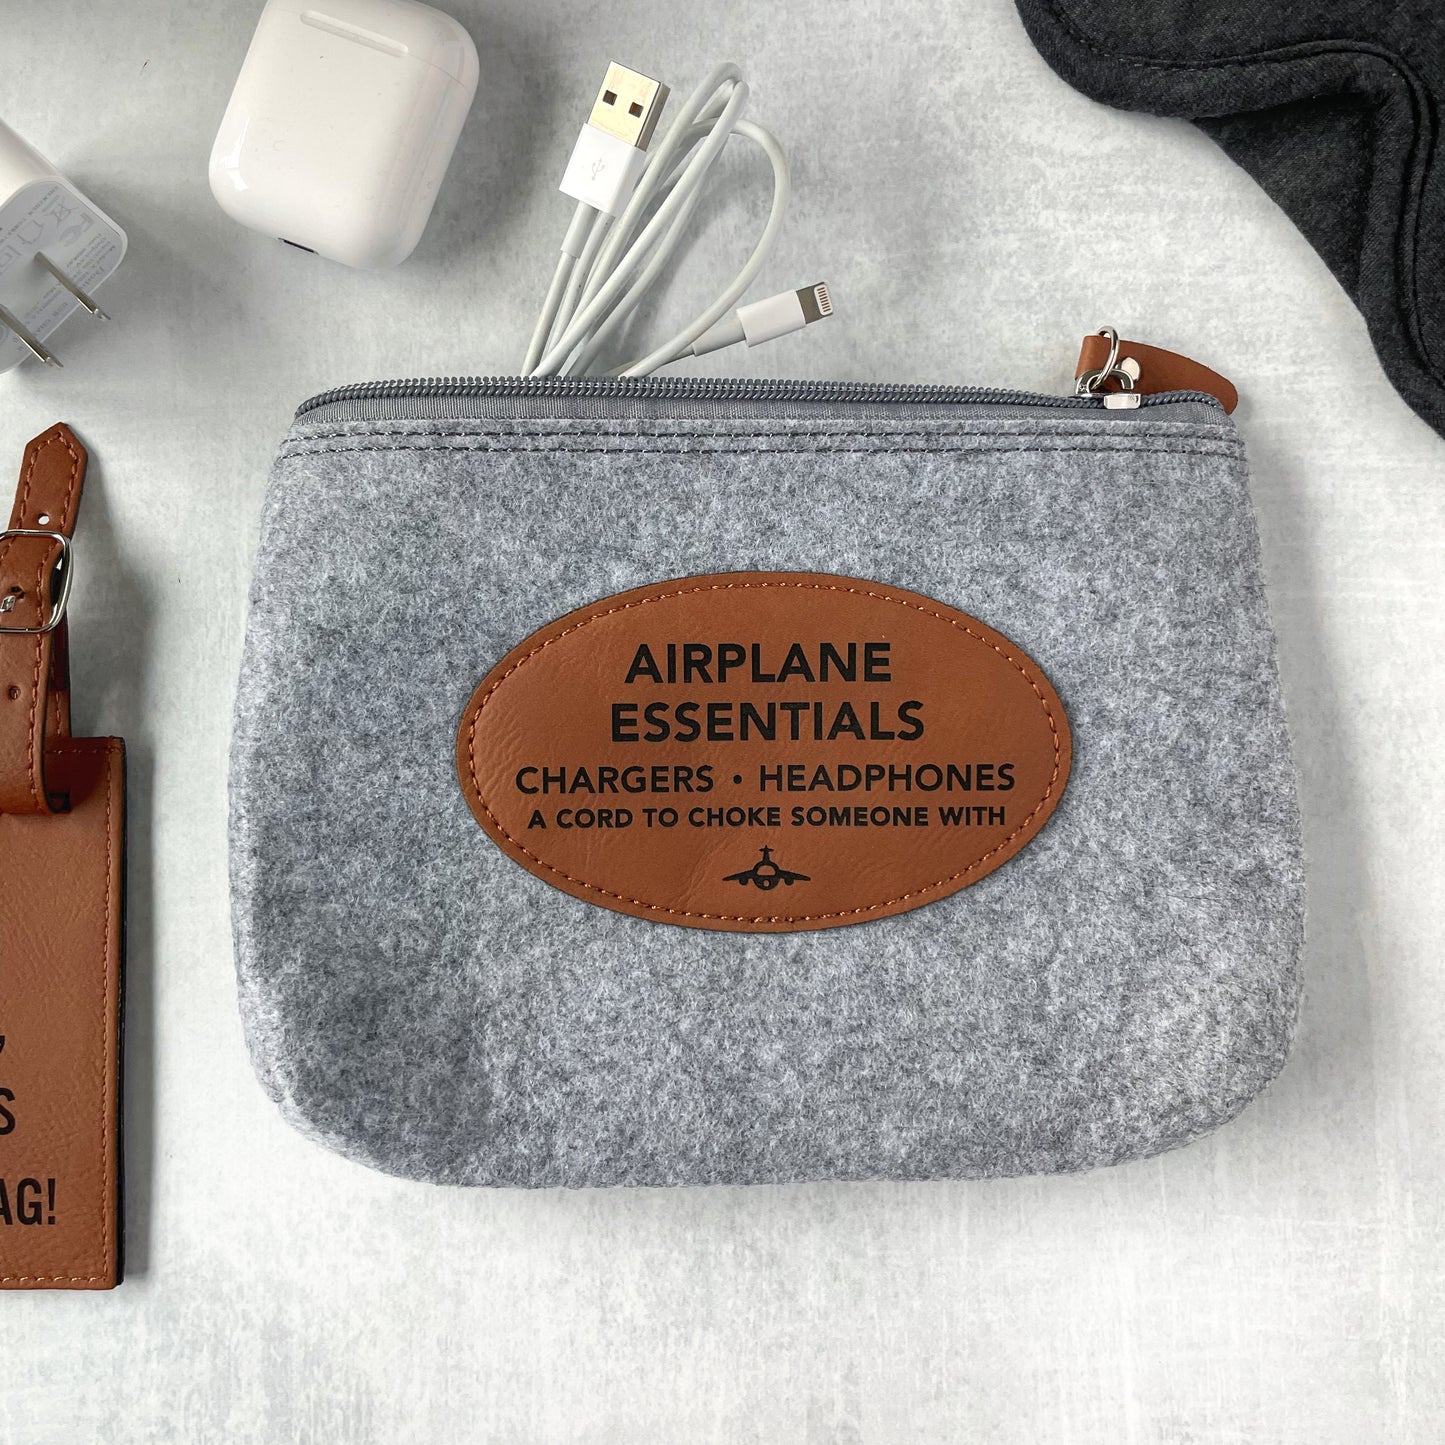 Laser engraved Accessory bag for travel essentials, Flannel Makeup Bag